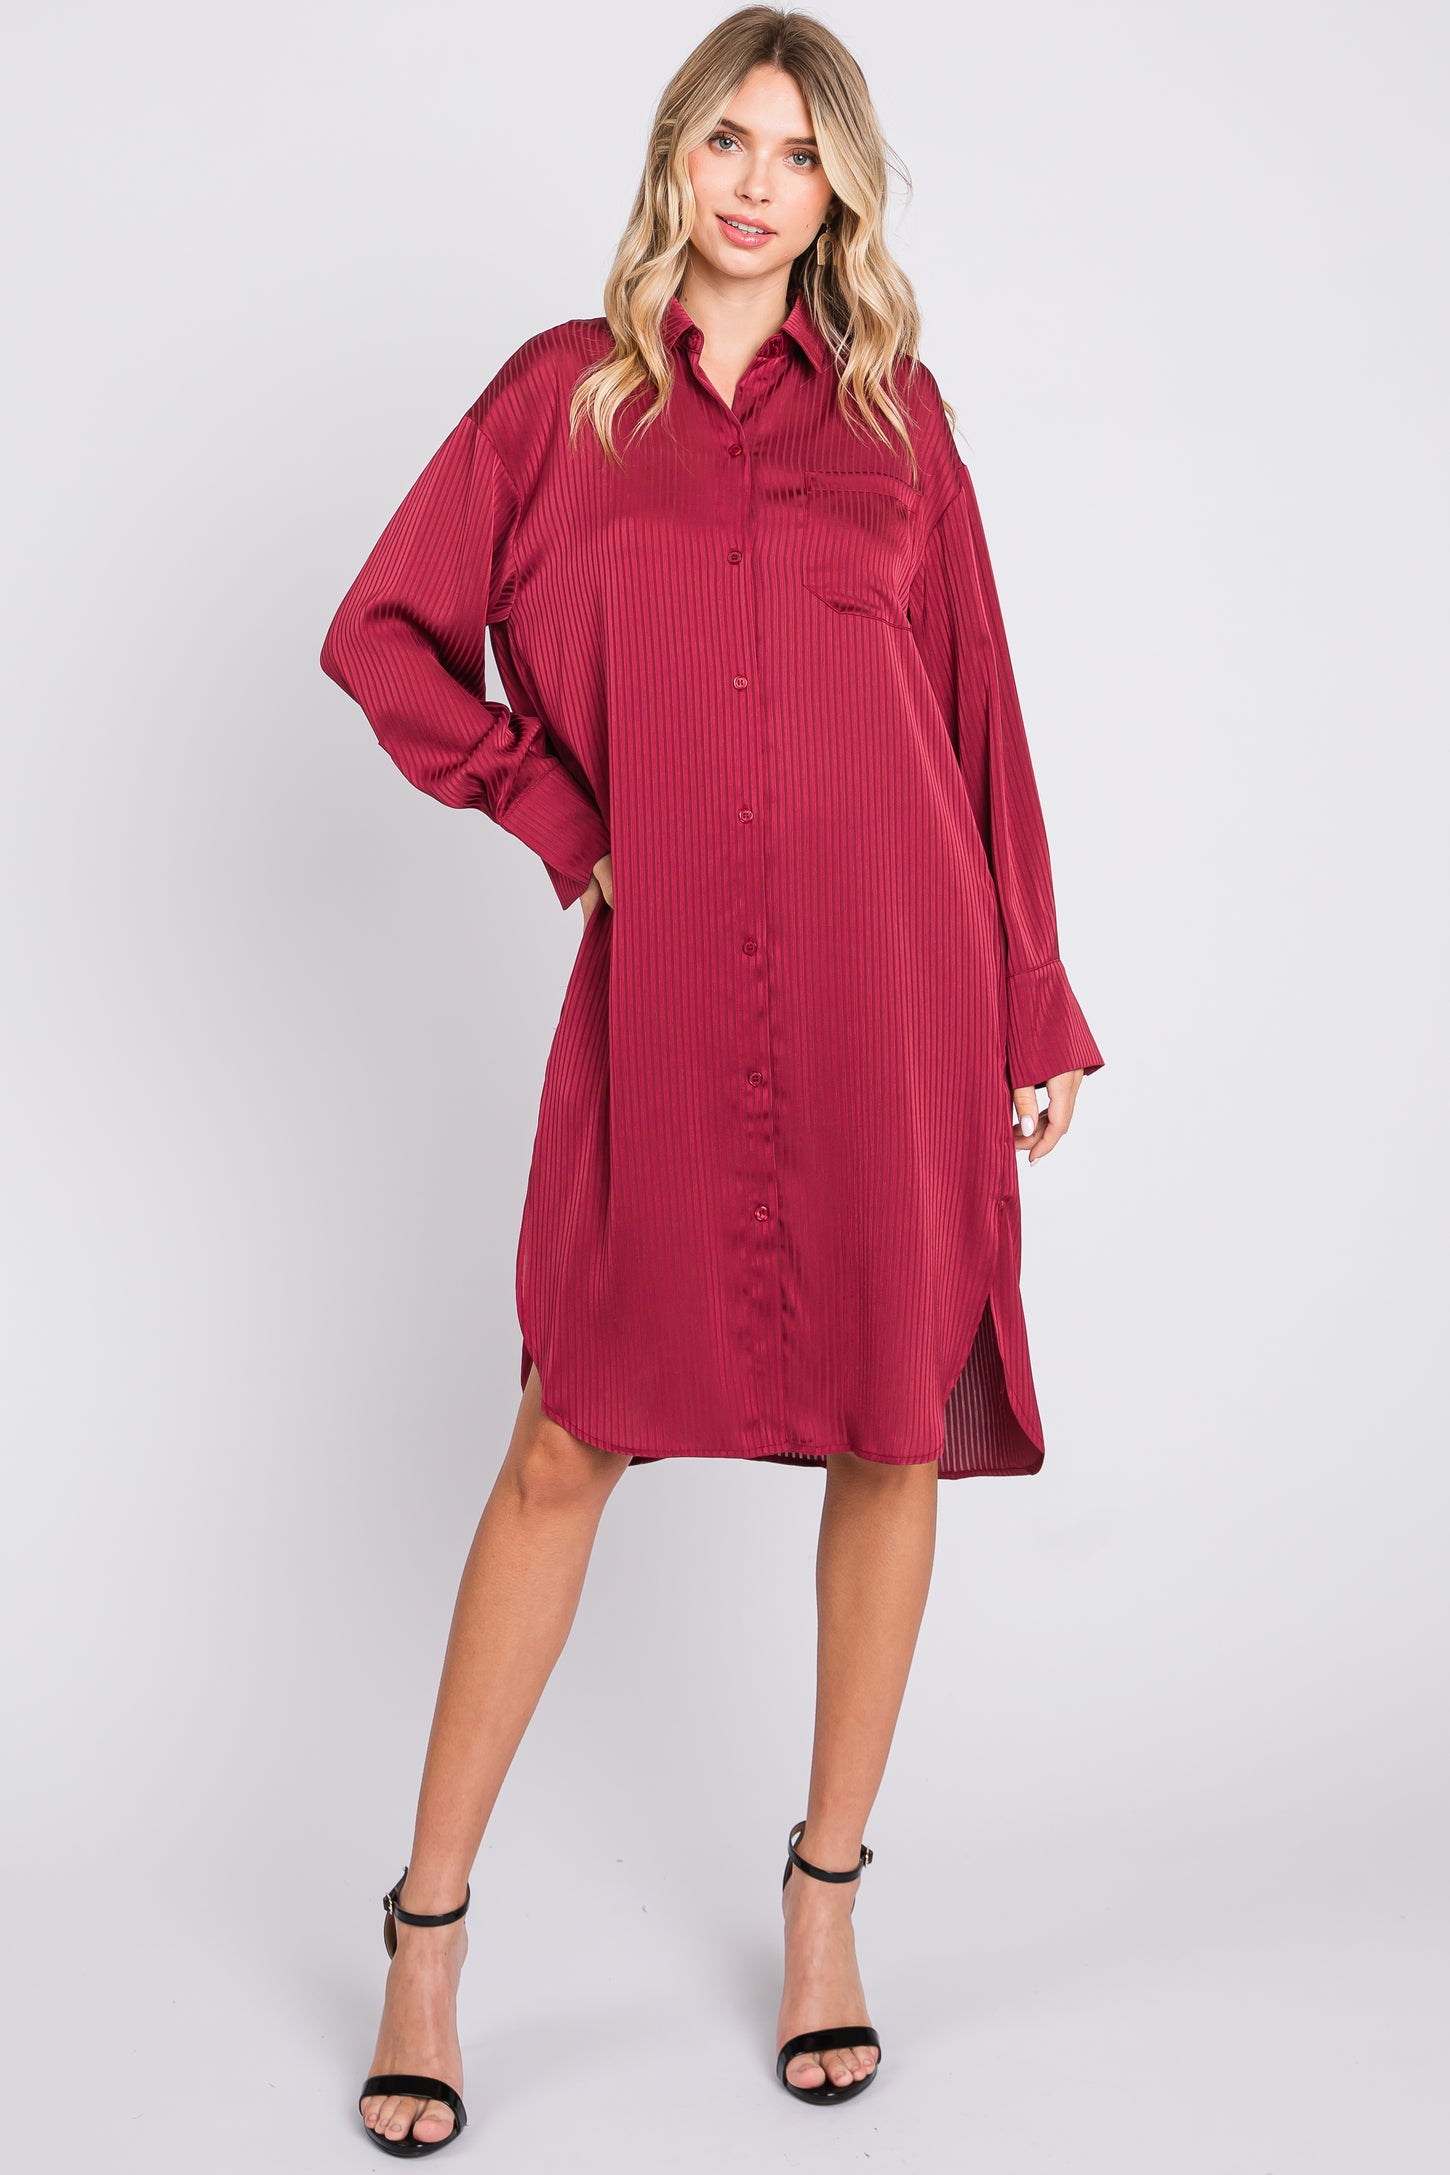 Red Striped Maternity Shirt Dress– PinkBlush